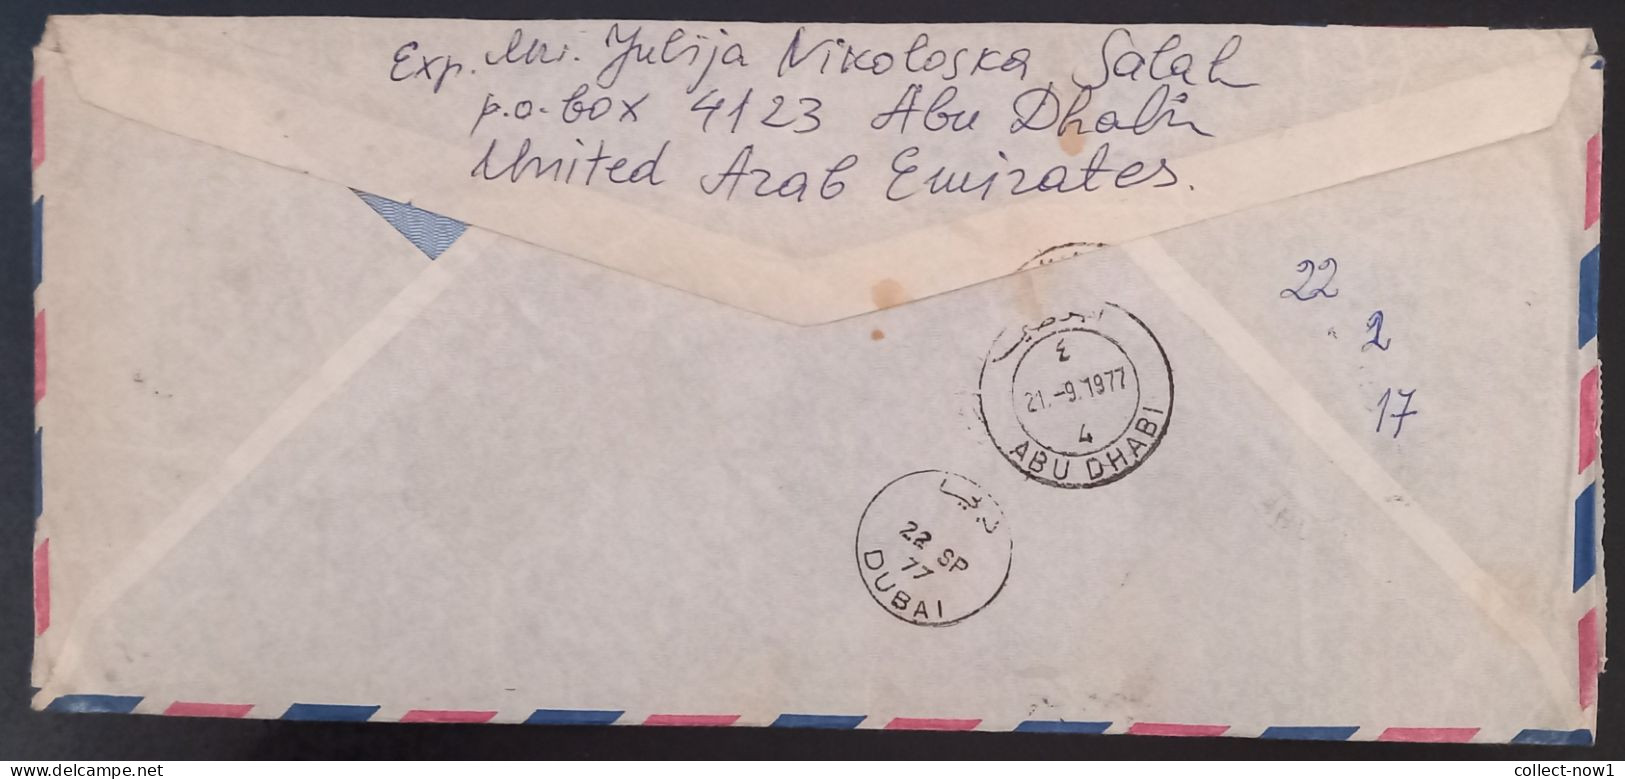 #45    UAE Abu Dhabi R Air Mail Cover Sent To Yugoslavia - 1977 - Abu Dhabi